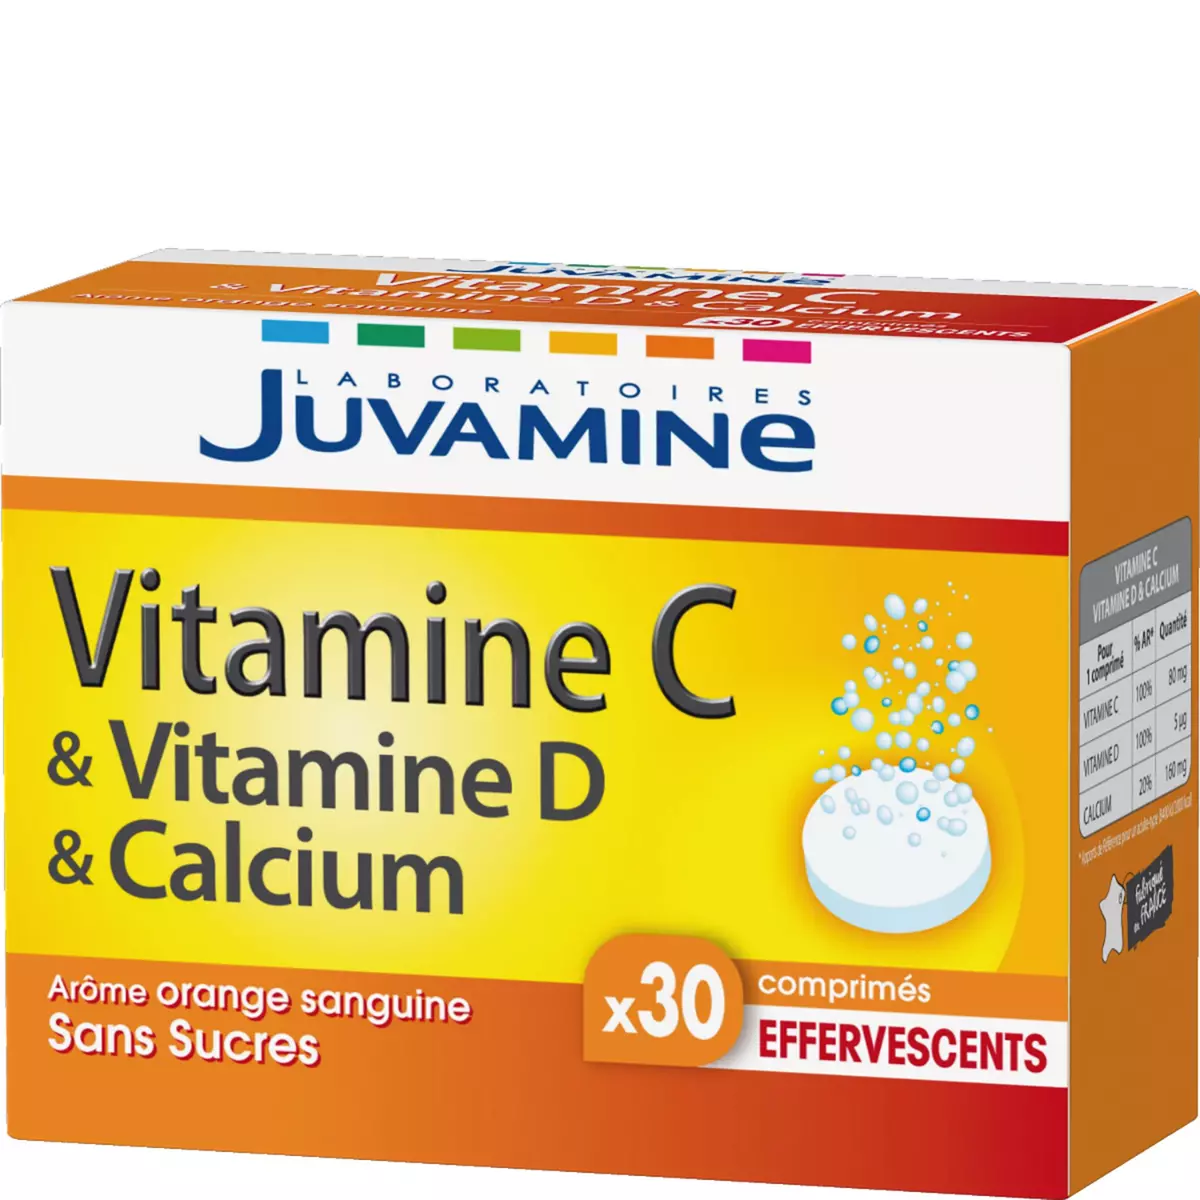 JUVAMINE Juvamine fizz vitamine C, D et calcium comprimé x30 -78,6g